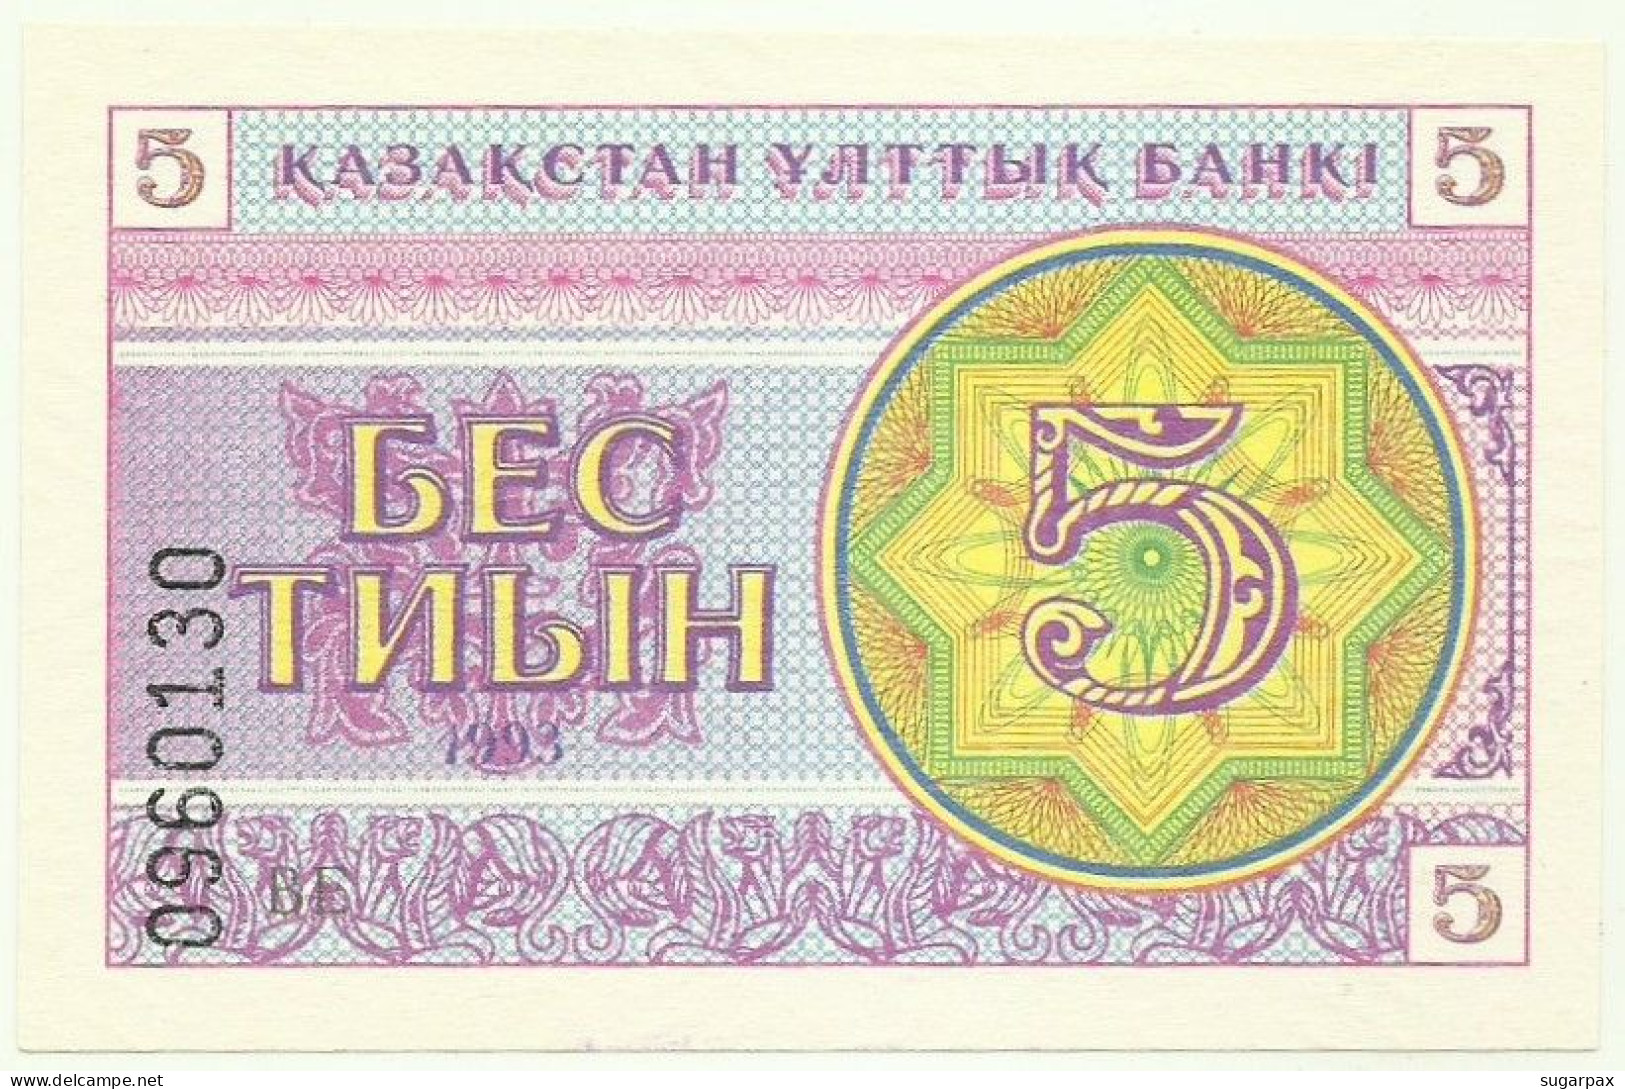 KAZAKHSTAN - 5 Tyin 1993 - Pick 3.a - Unc. - LOW Serial # Position - Wmk Snowflake Pattern - Kazakhstan